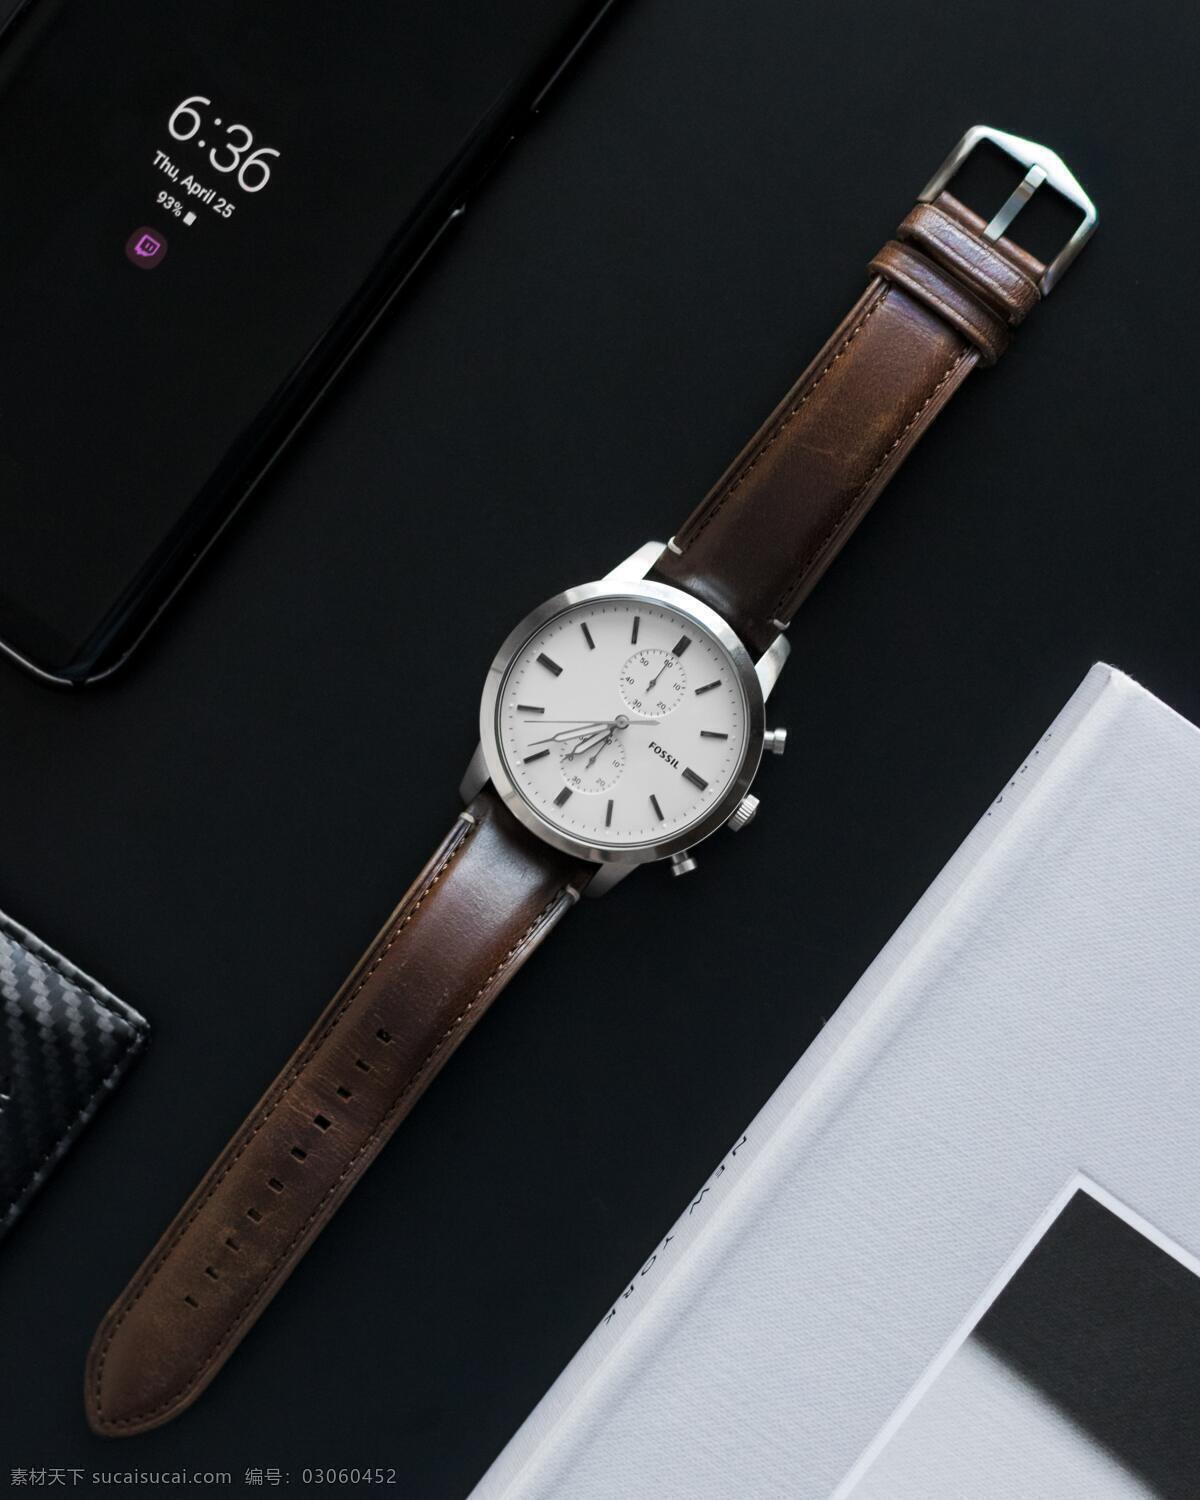 怀表 机械表 首饰 装饰 手表素材 手表背景